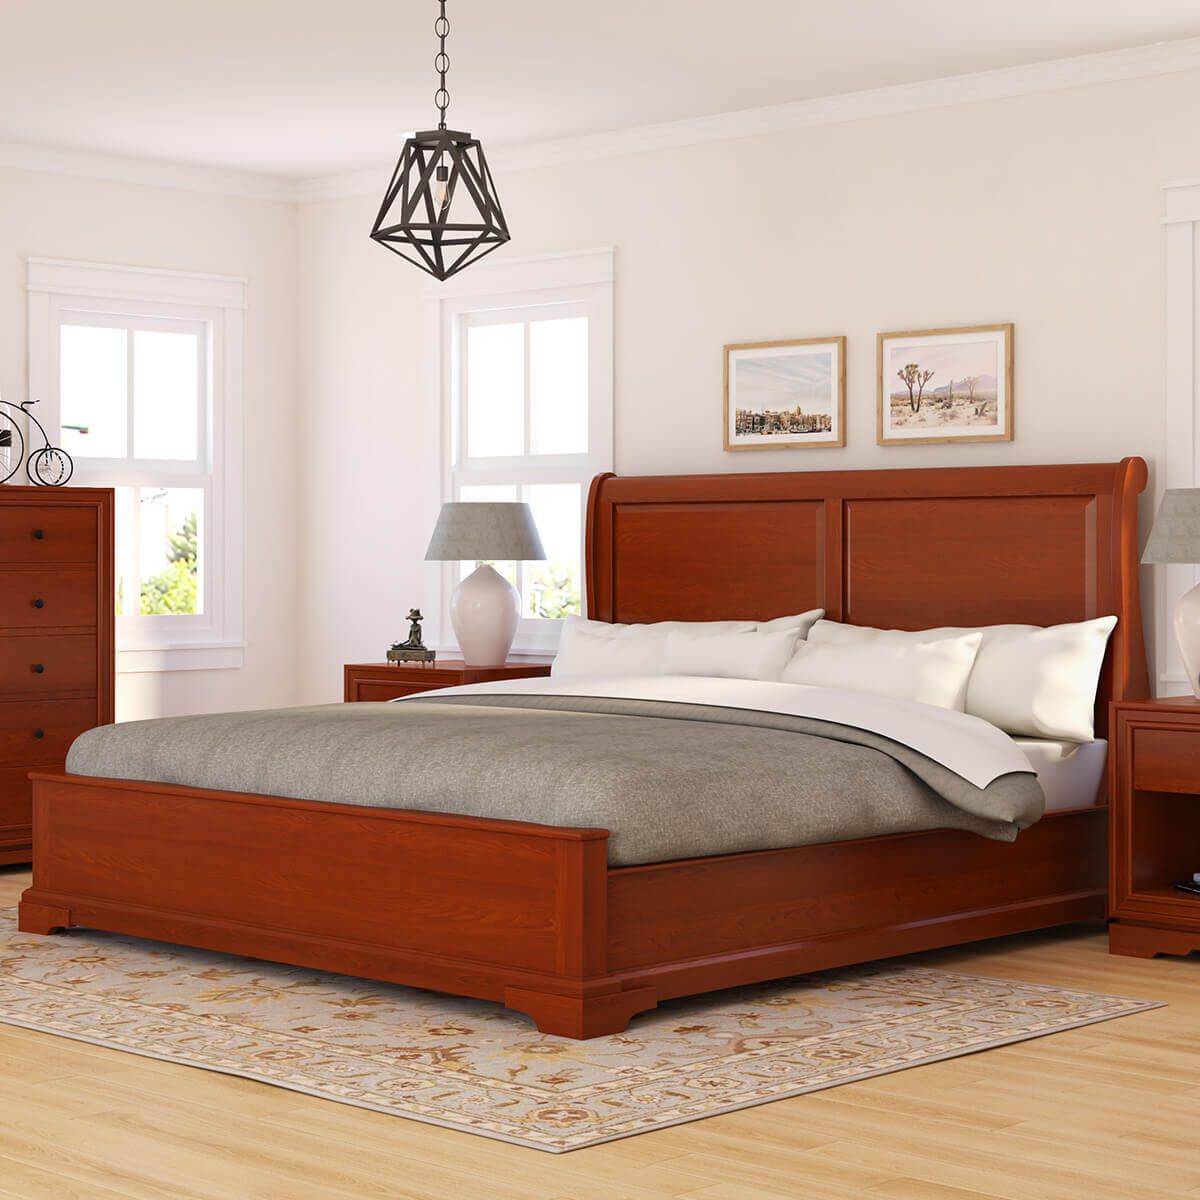 giá giường ngủ gỗ gụ 